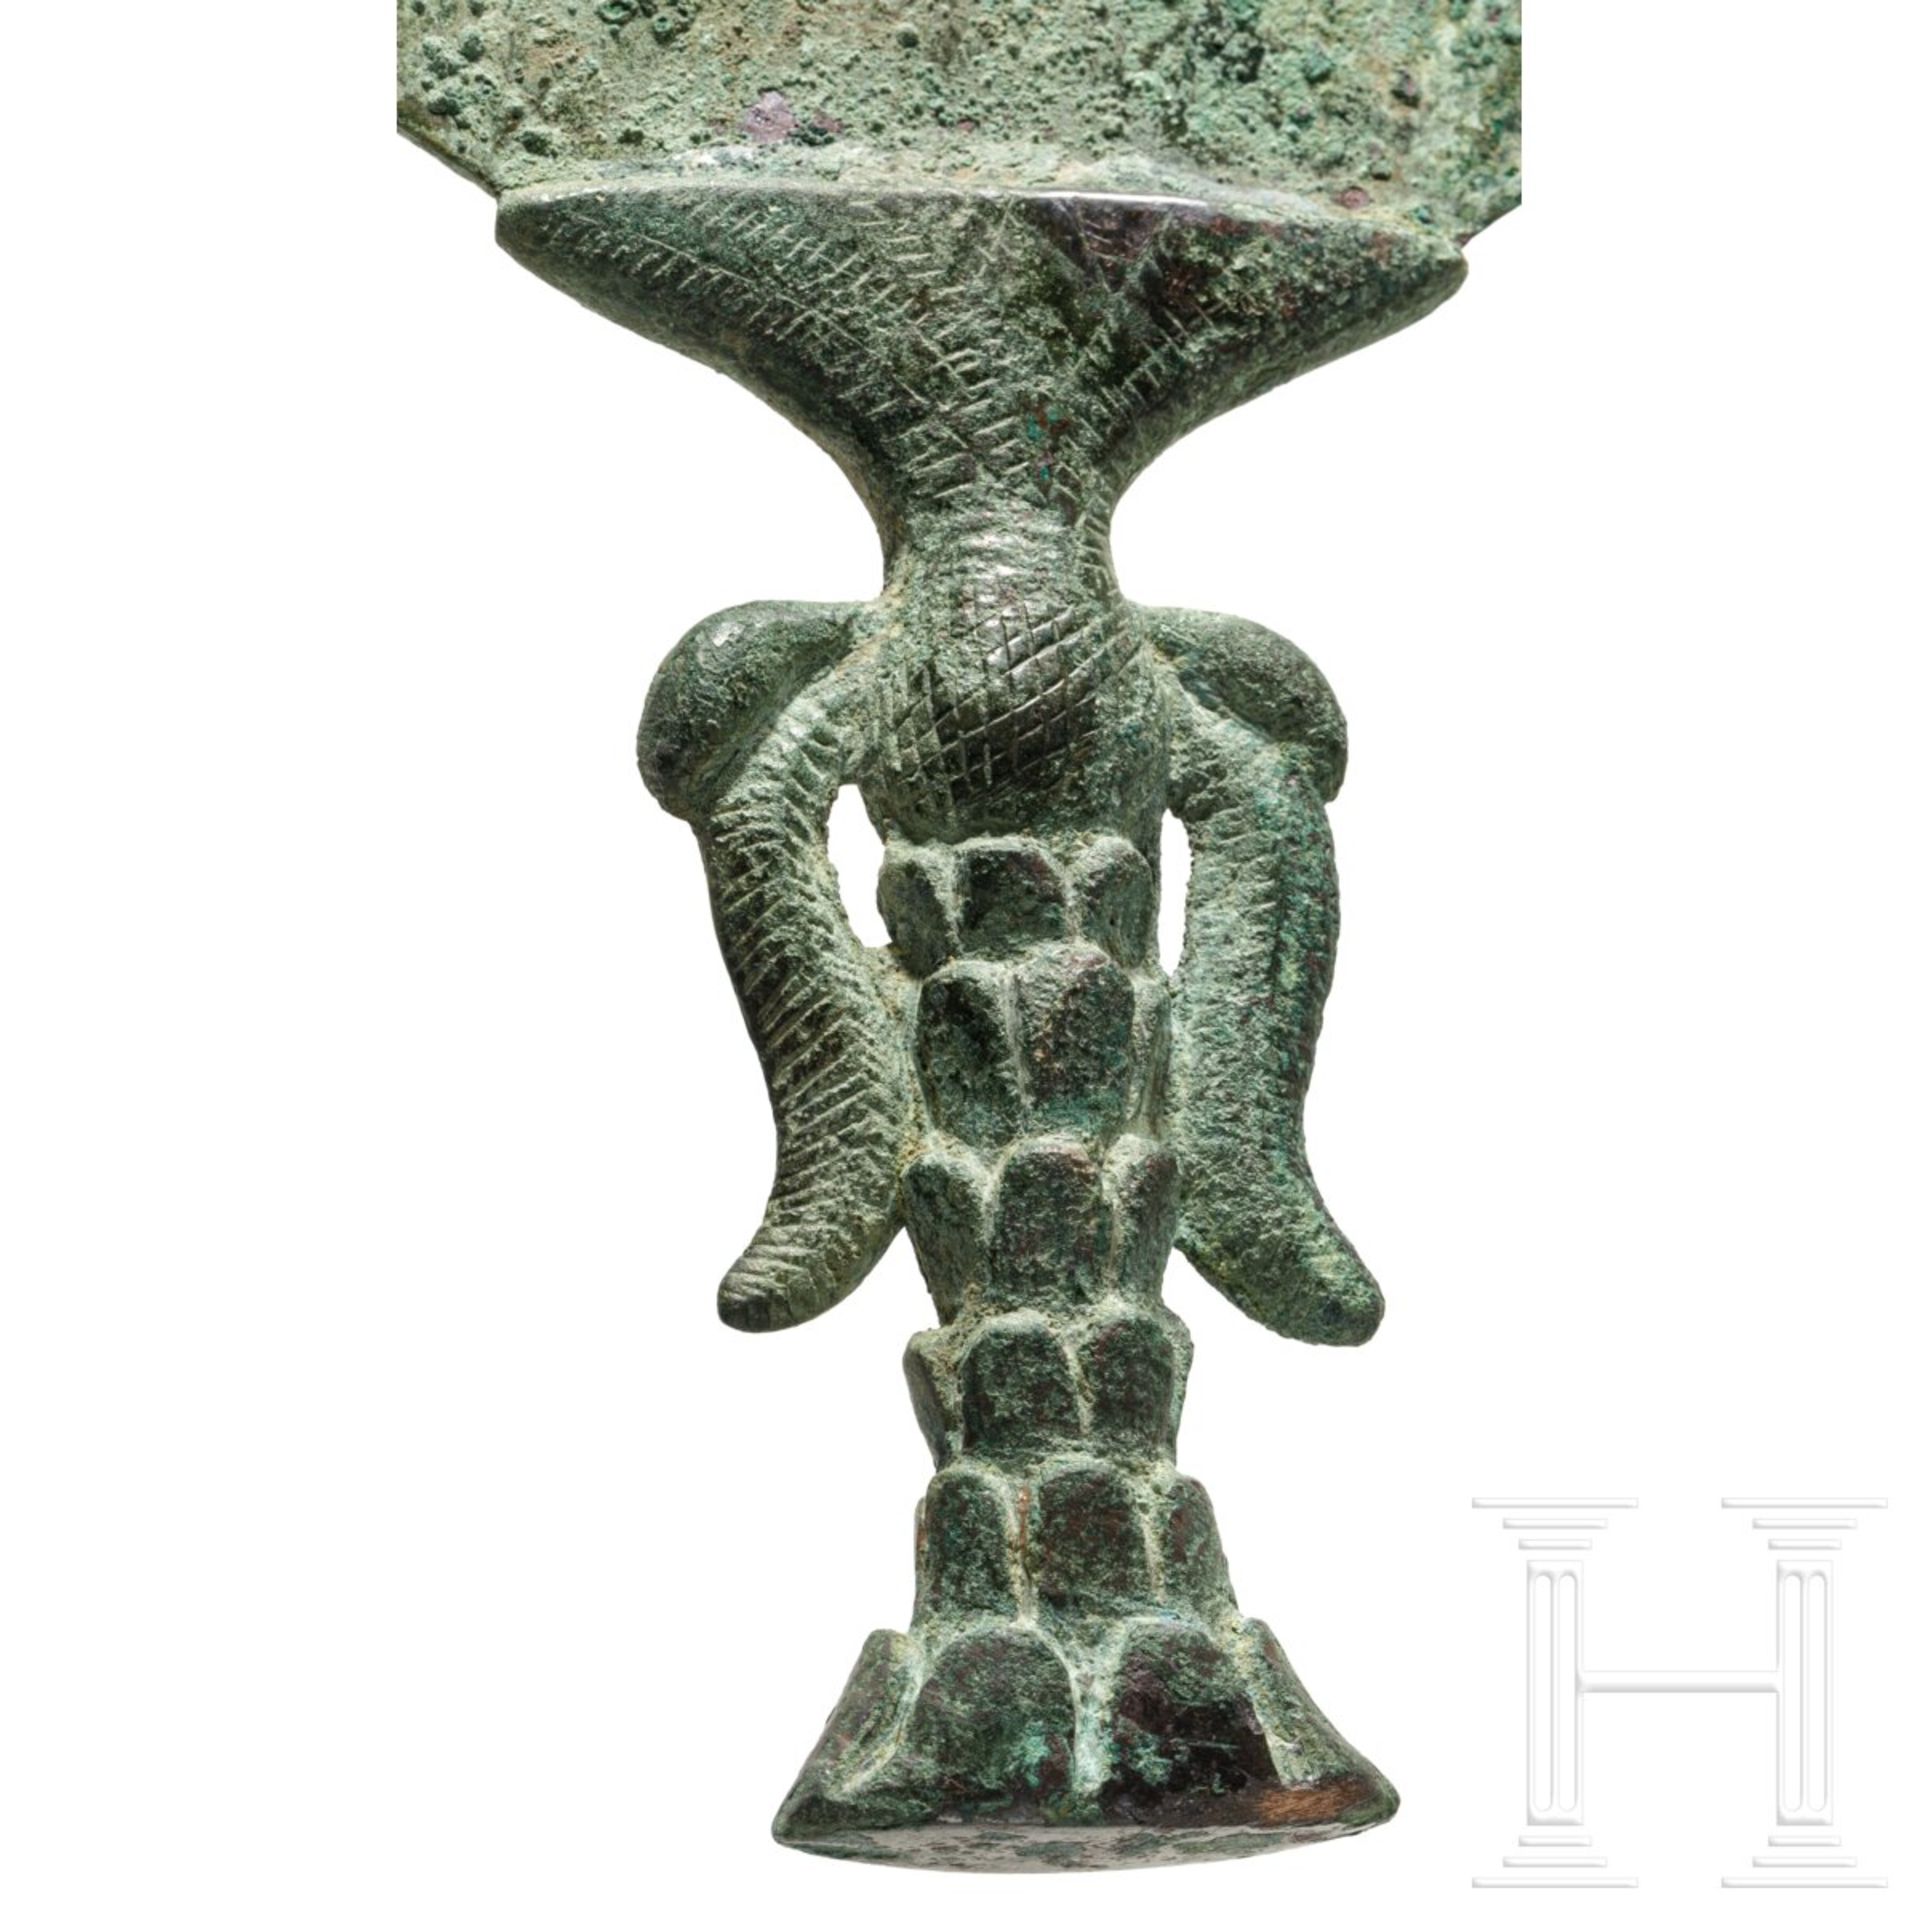 Gro§er Bronzespiegel, elamitisch-sumerisch, 2. Jtsd. v. Chr. - Bild 4 aus 5